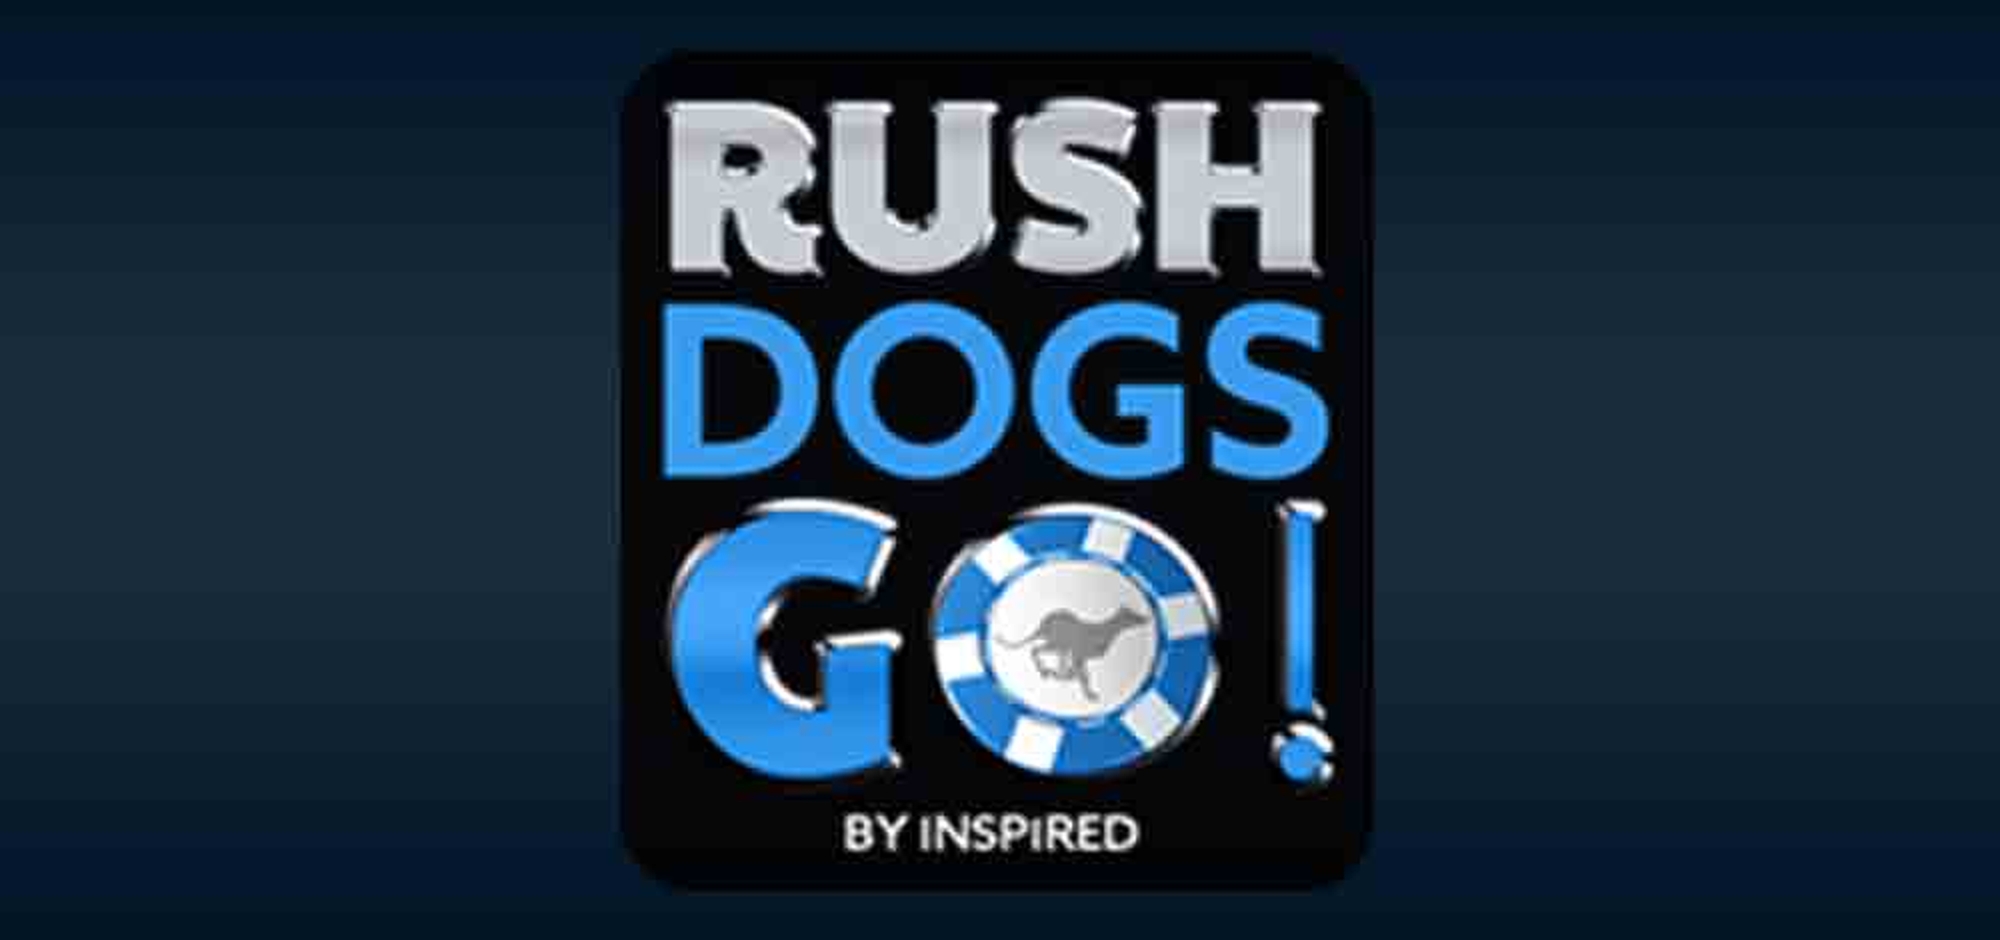 Rush Dogs Go!